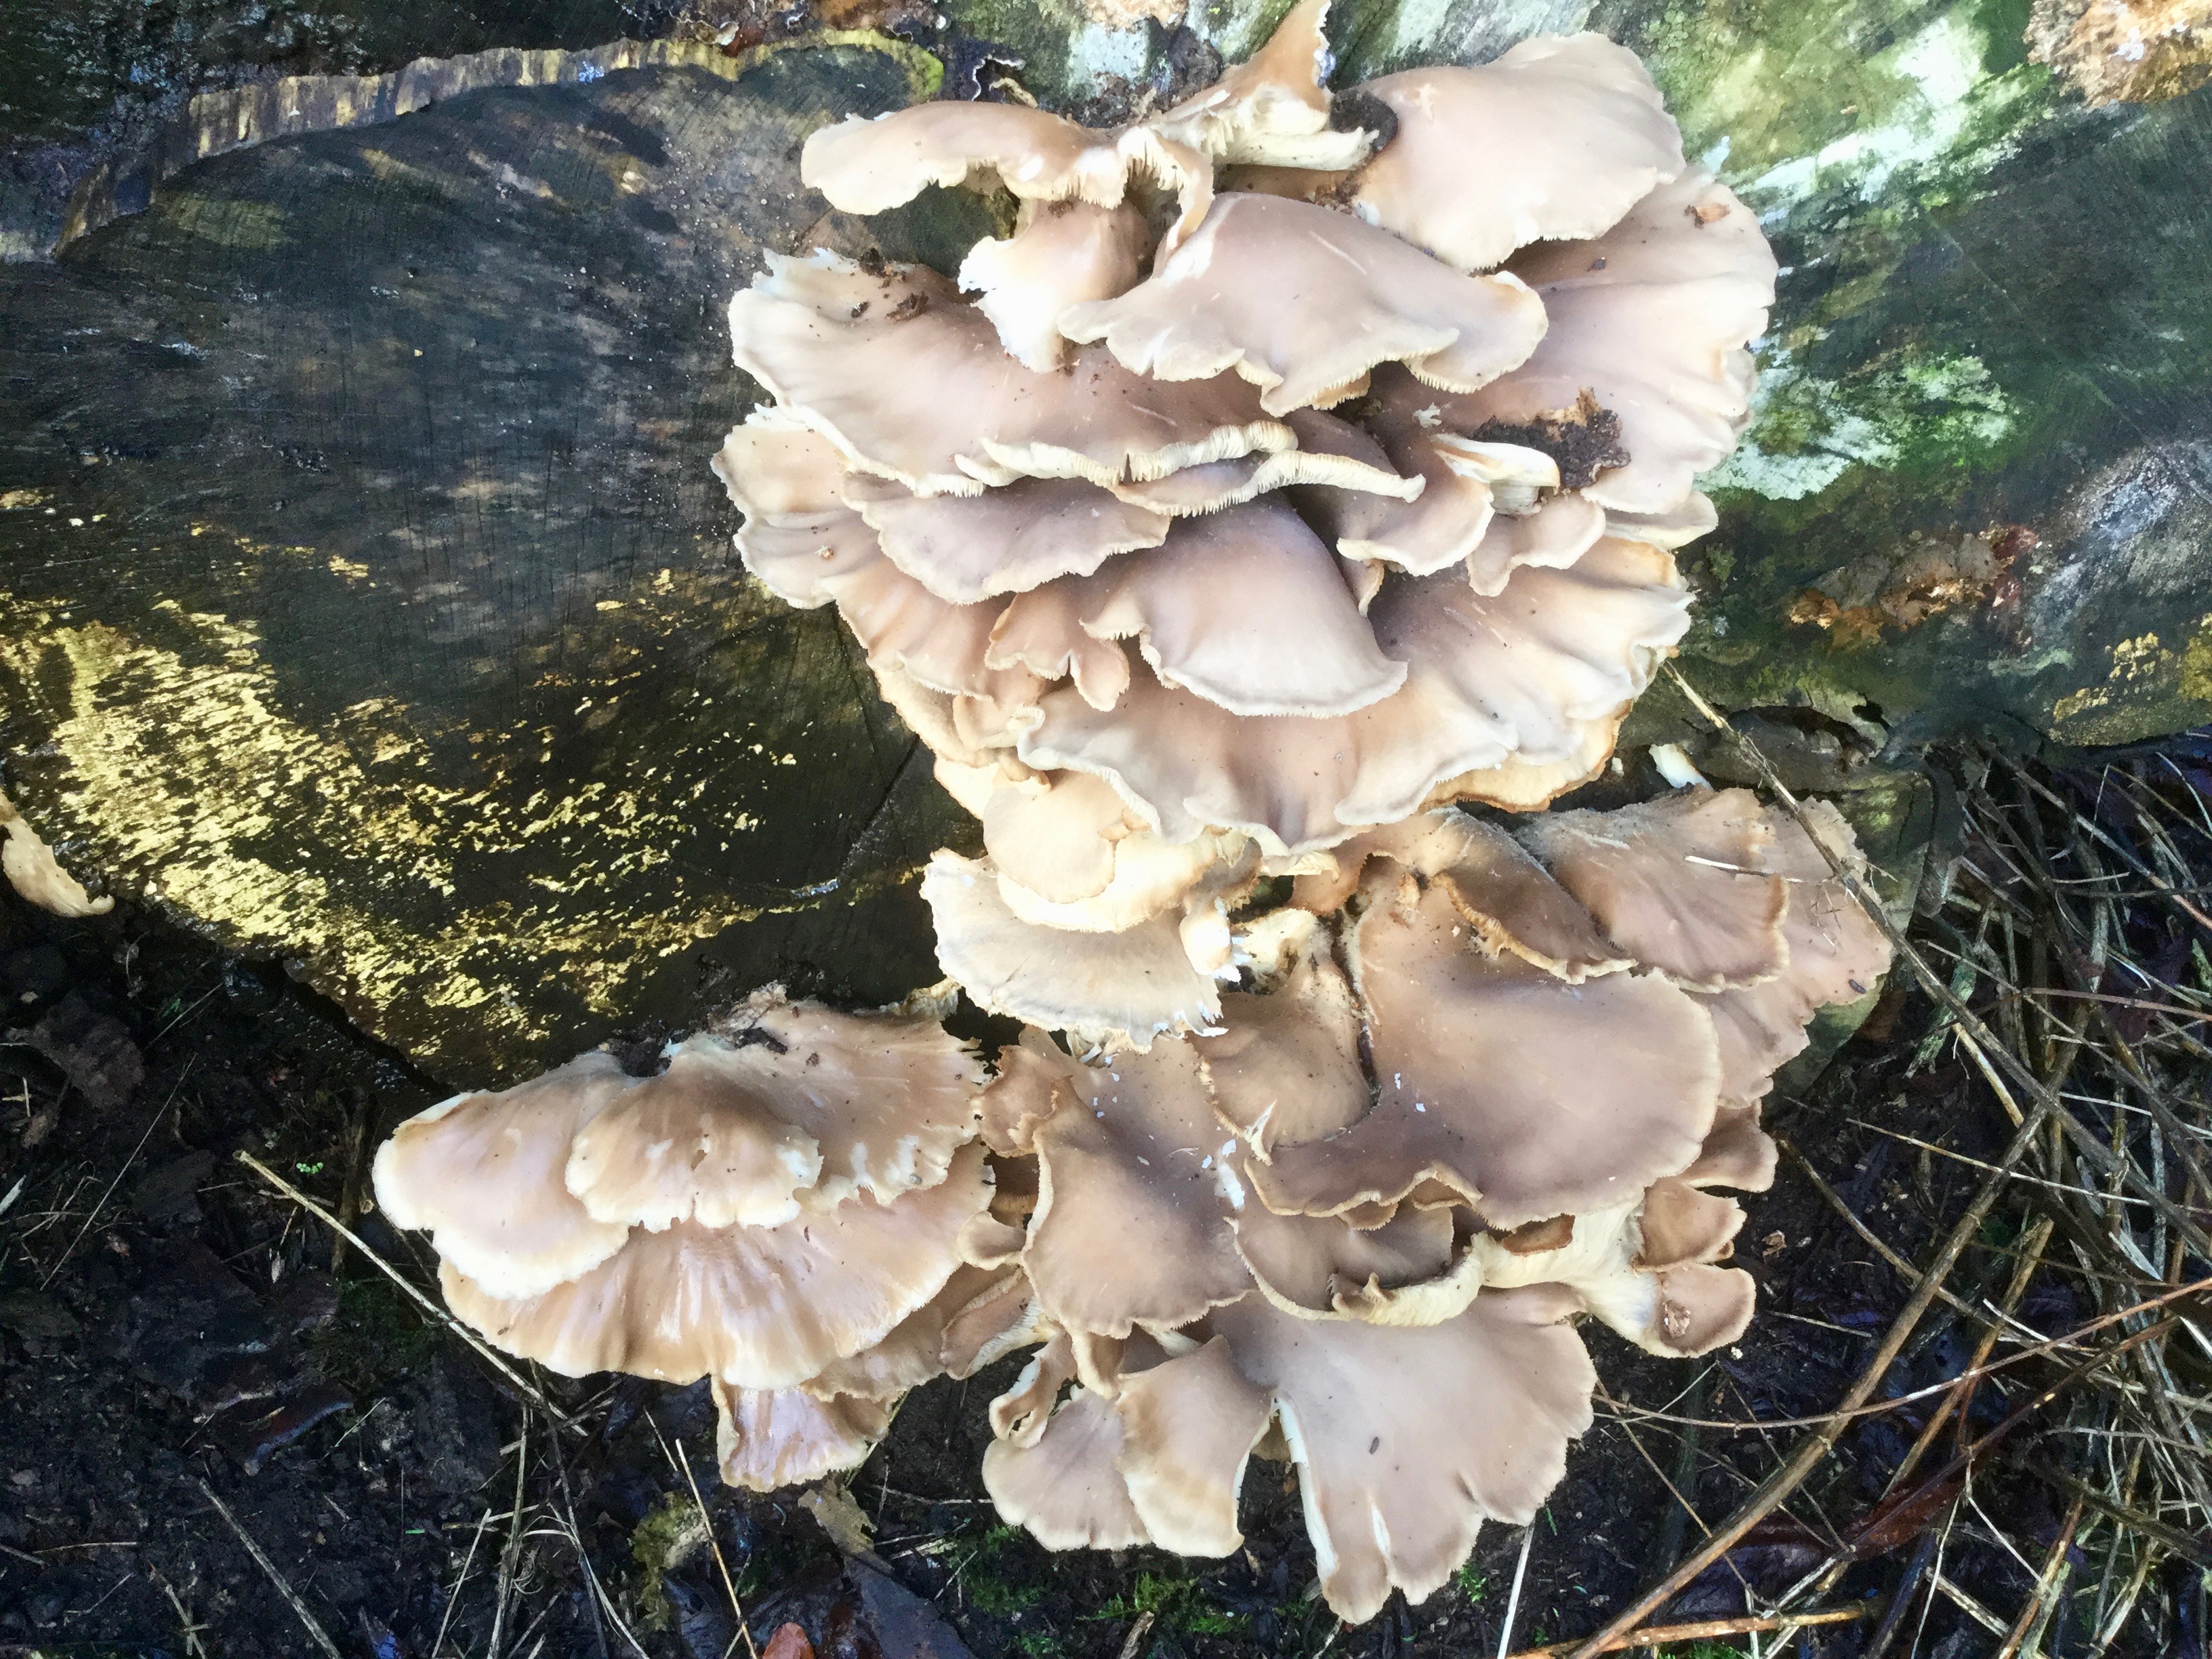 Mortonhall Fungi - 2 Feb 2020 - Photo 65